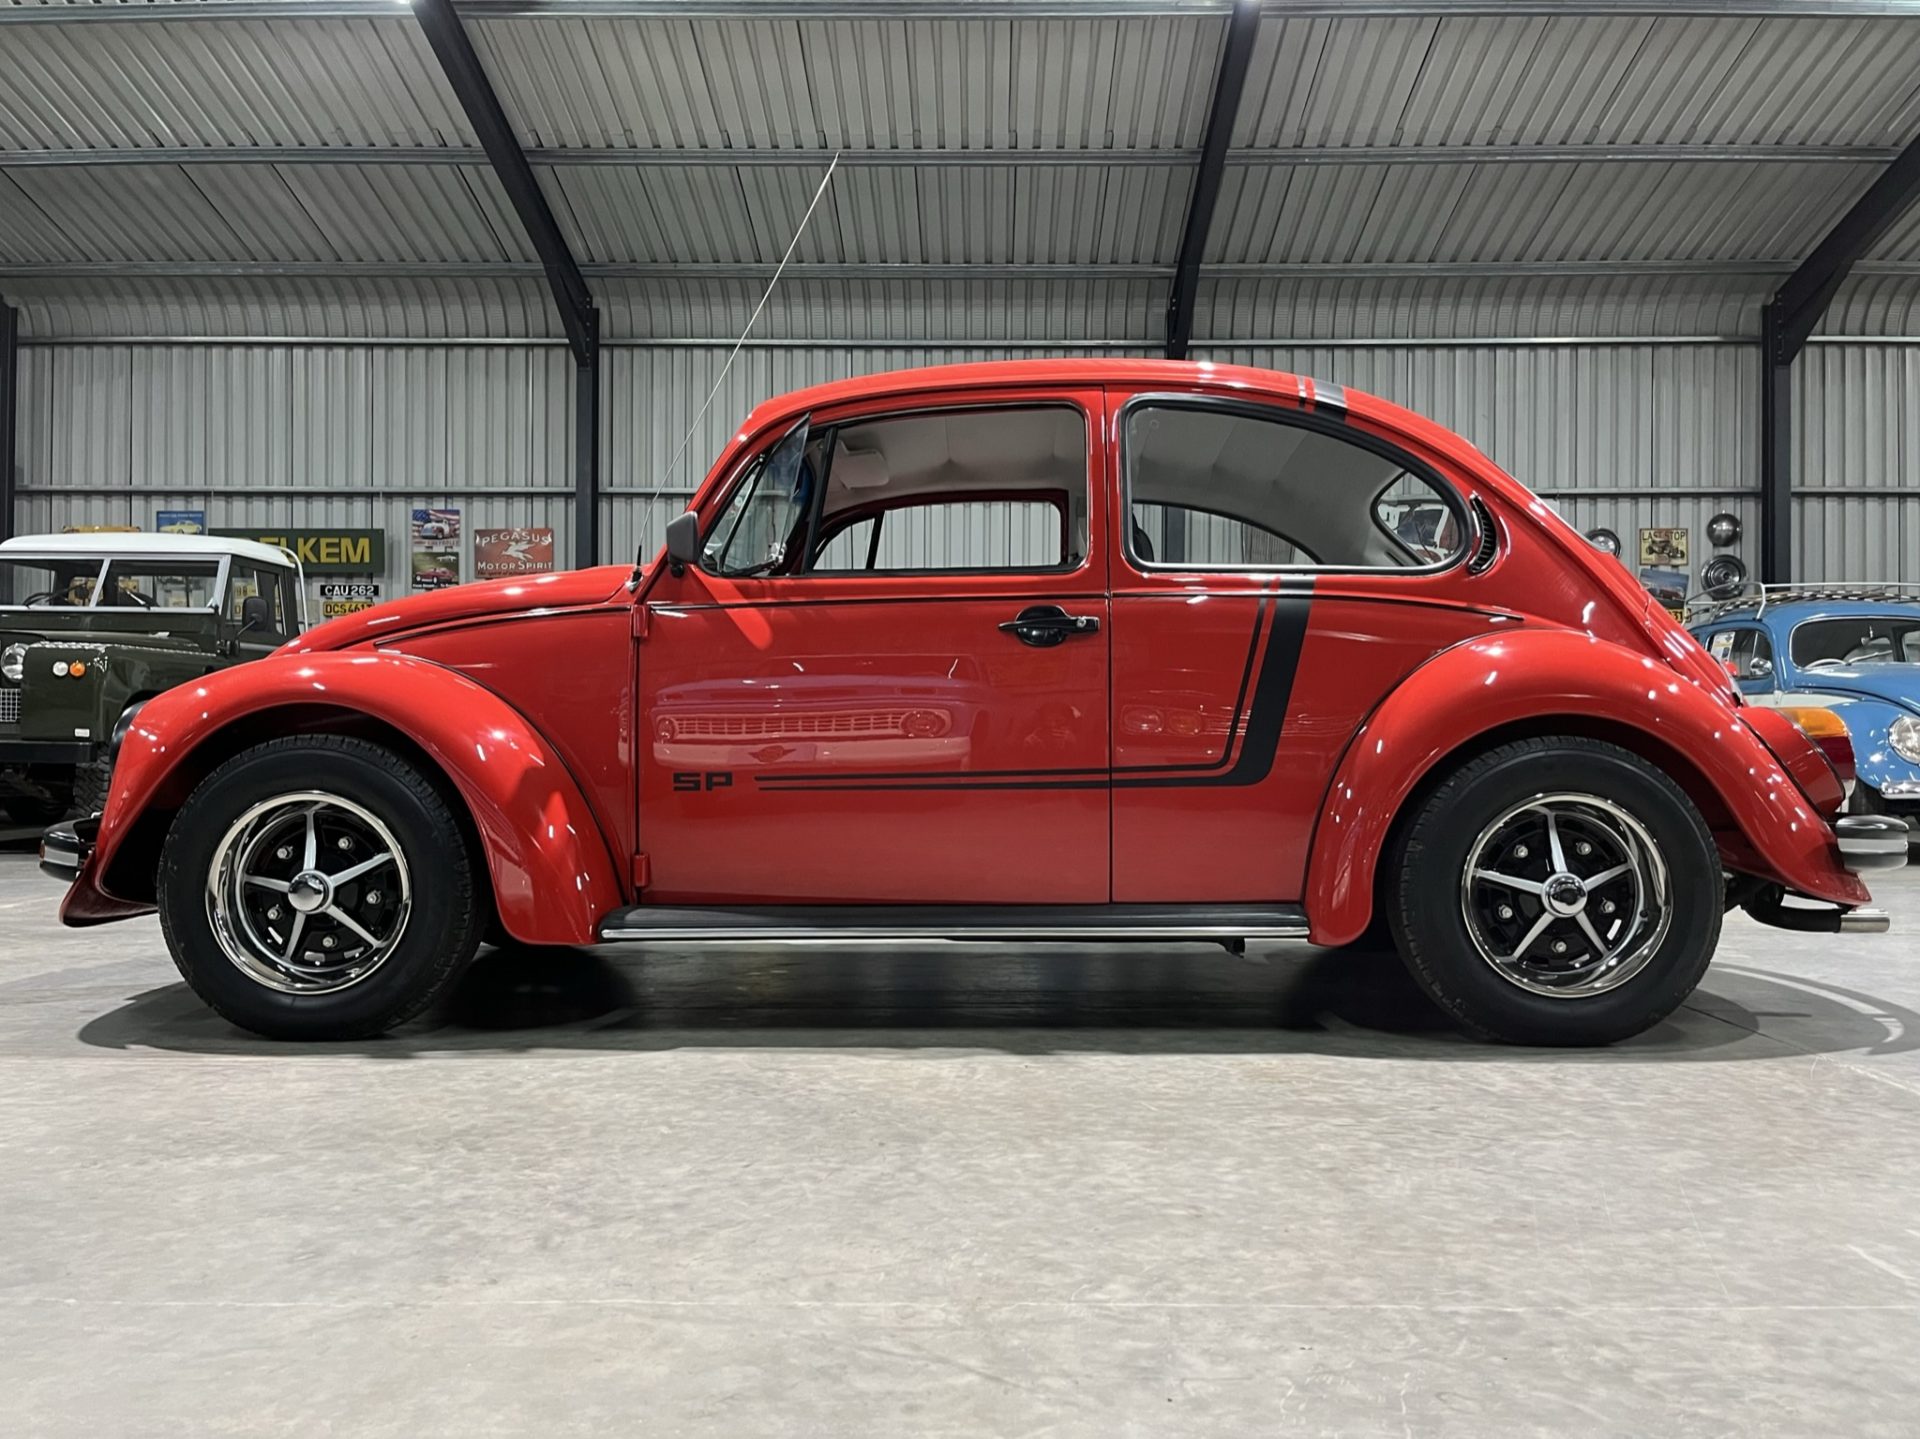 1976 Volkswagen SP Beetle Recreation